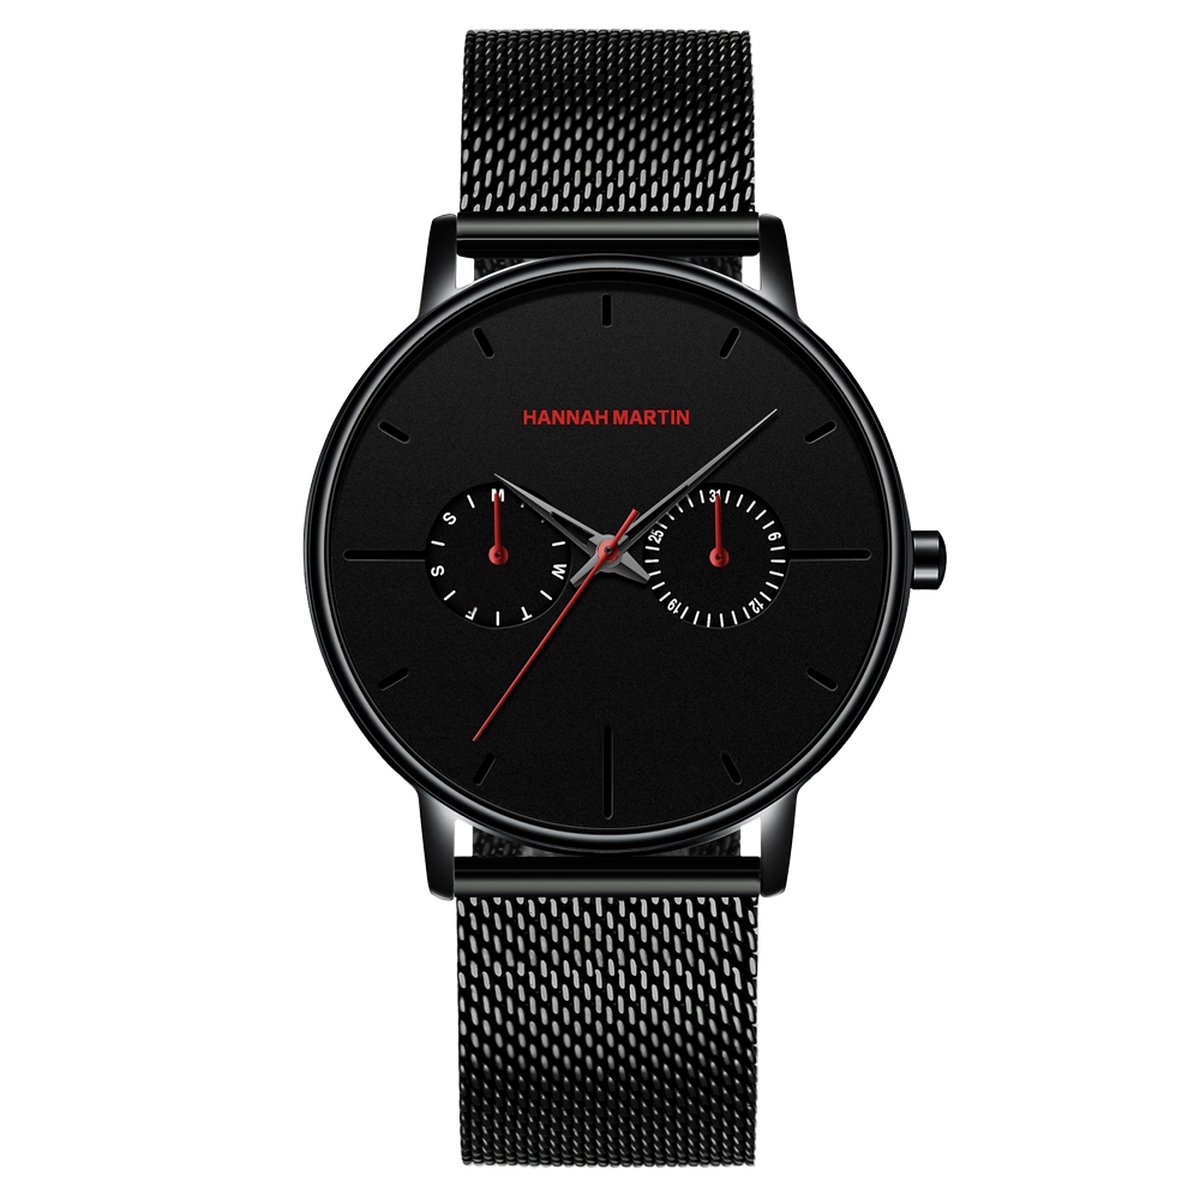 HANNAH MARTIN horloge met zwarte stalen polsband, zwarte wijzerplaat, zwarte horlogekast en zwarte wijzers voor heren met stijl ( model 150 WH2 )